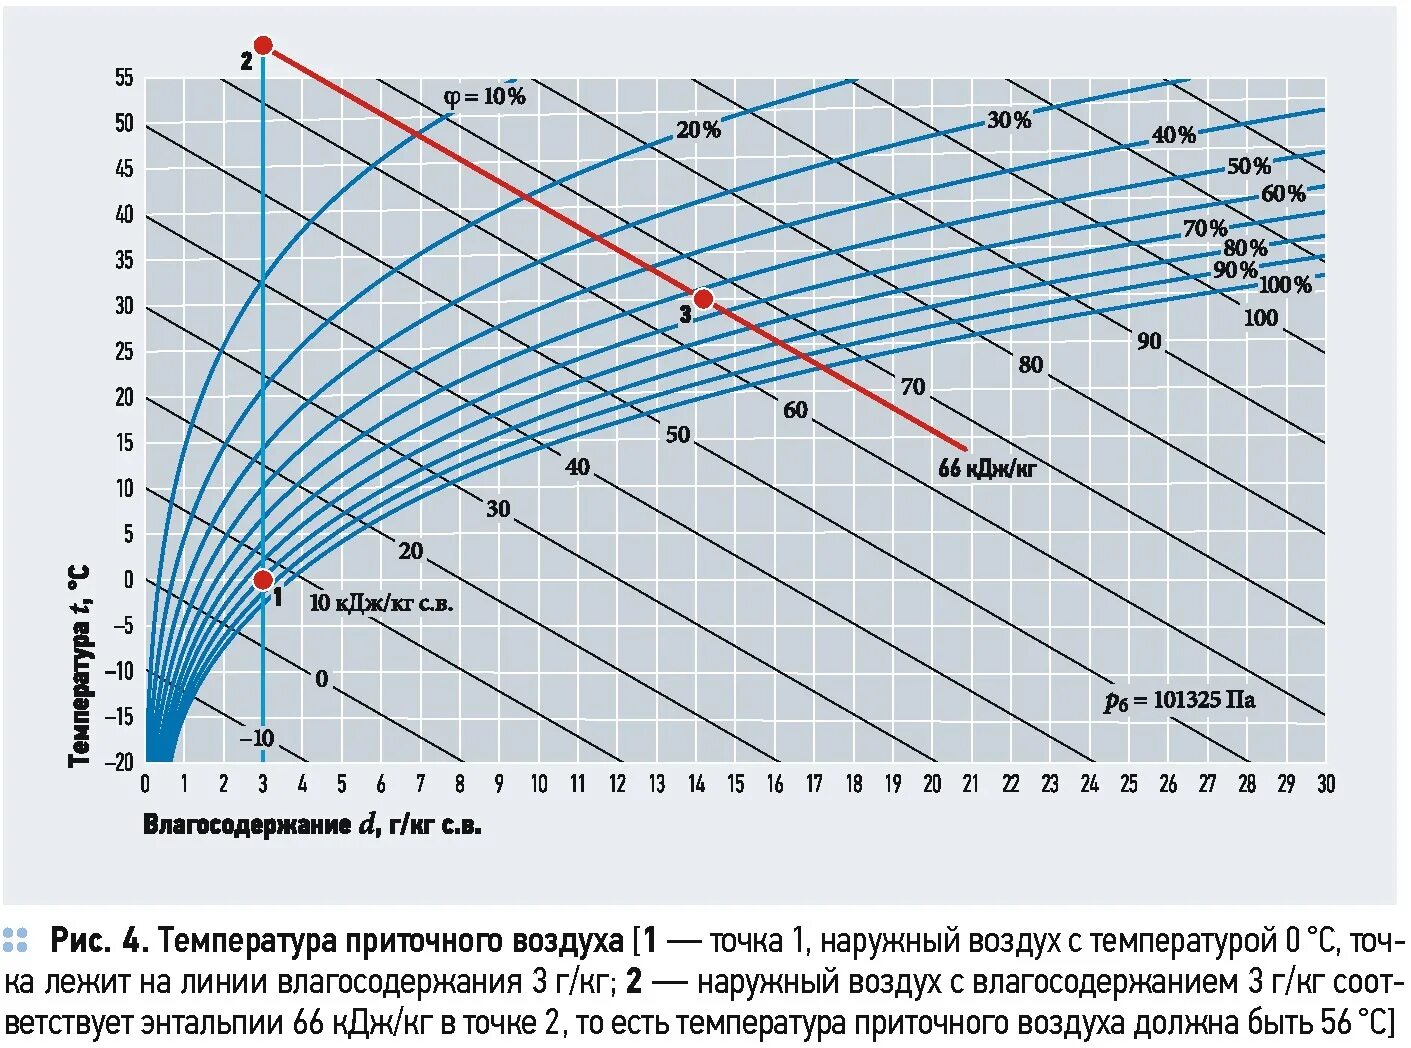 Наружного воздуха график. Содержание влаги в воздухе. Влагосодержание наружного воздуха. Таблица содержания влаги в воздухе. График влажности и энтальпий.